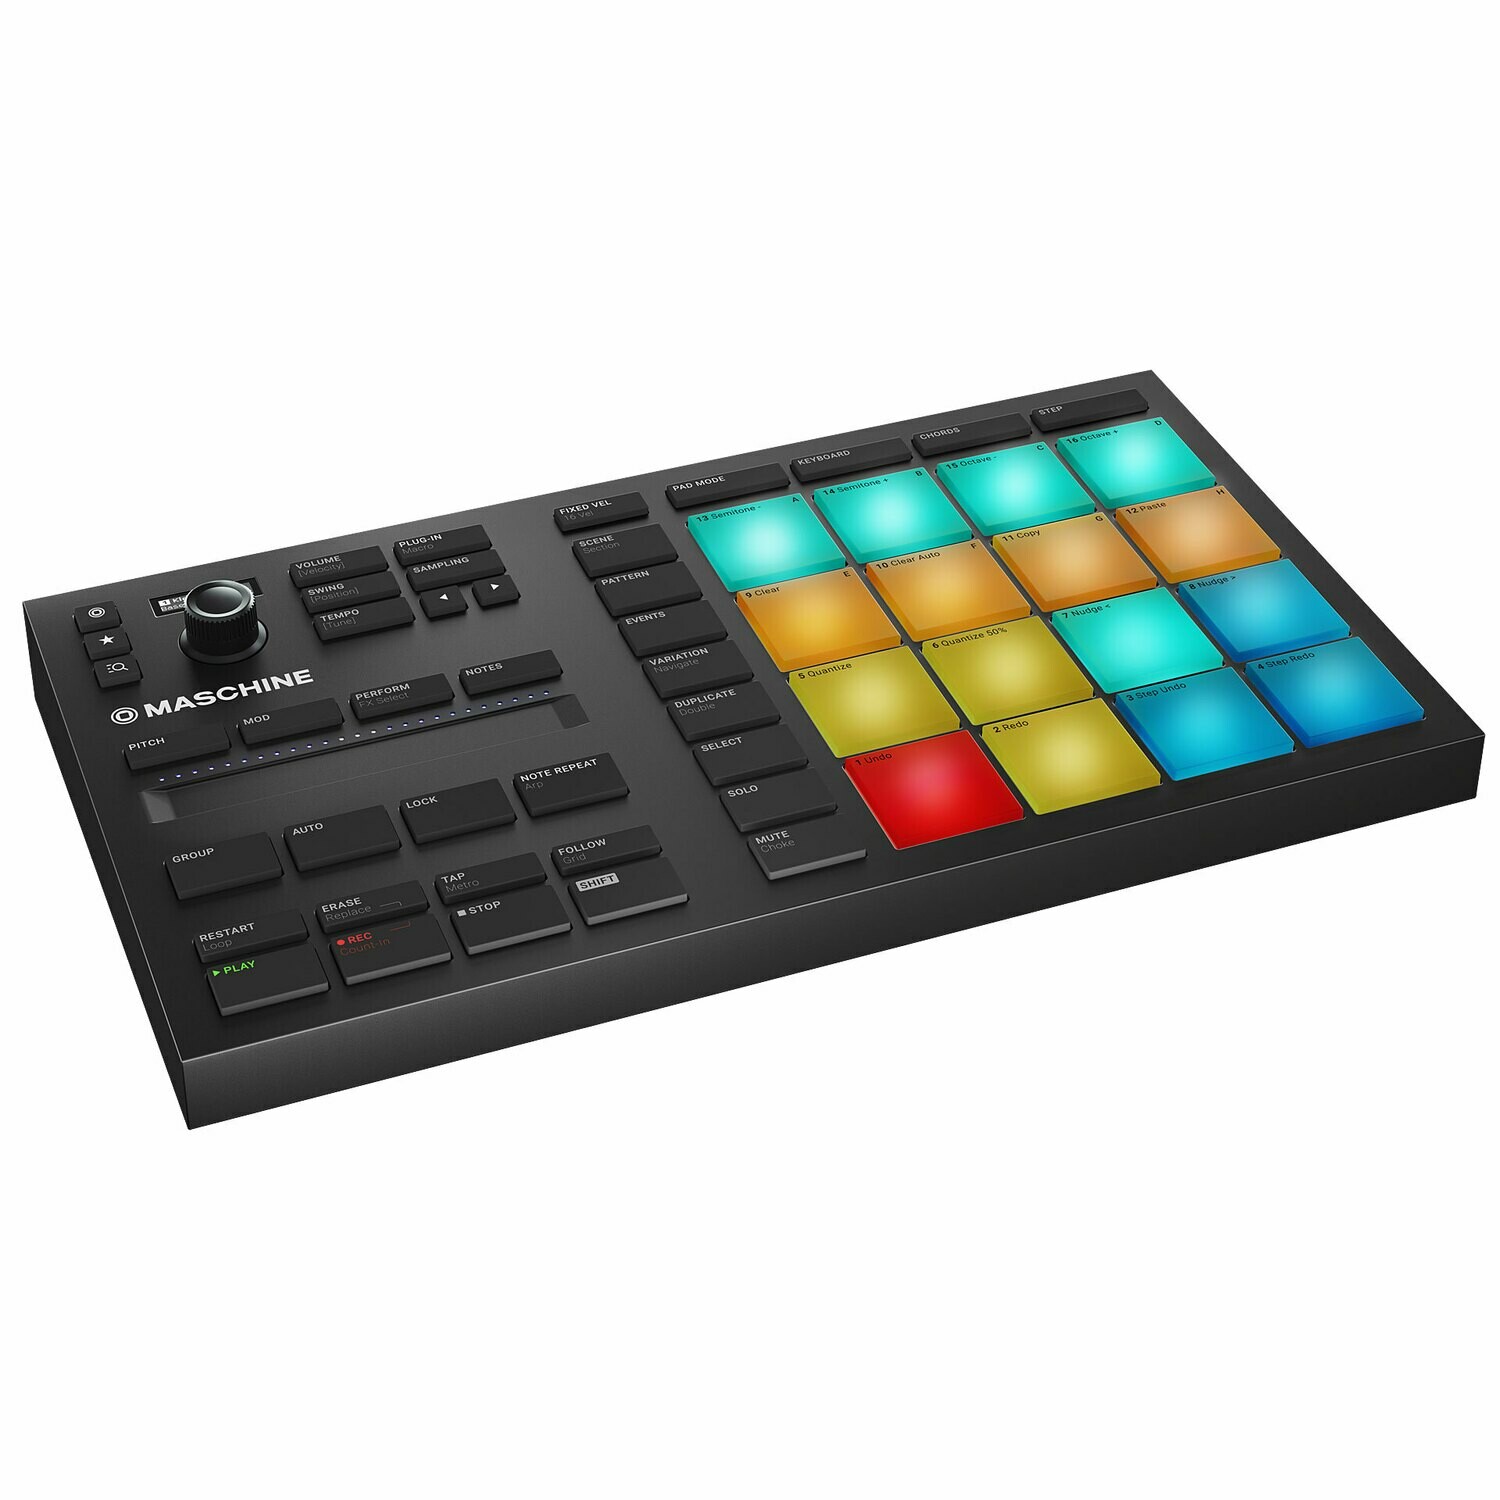 MIDI-контроллер Native Instruments MASCHINE MIKRO MK3